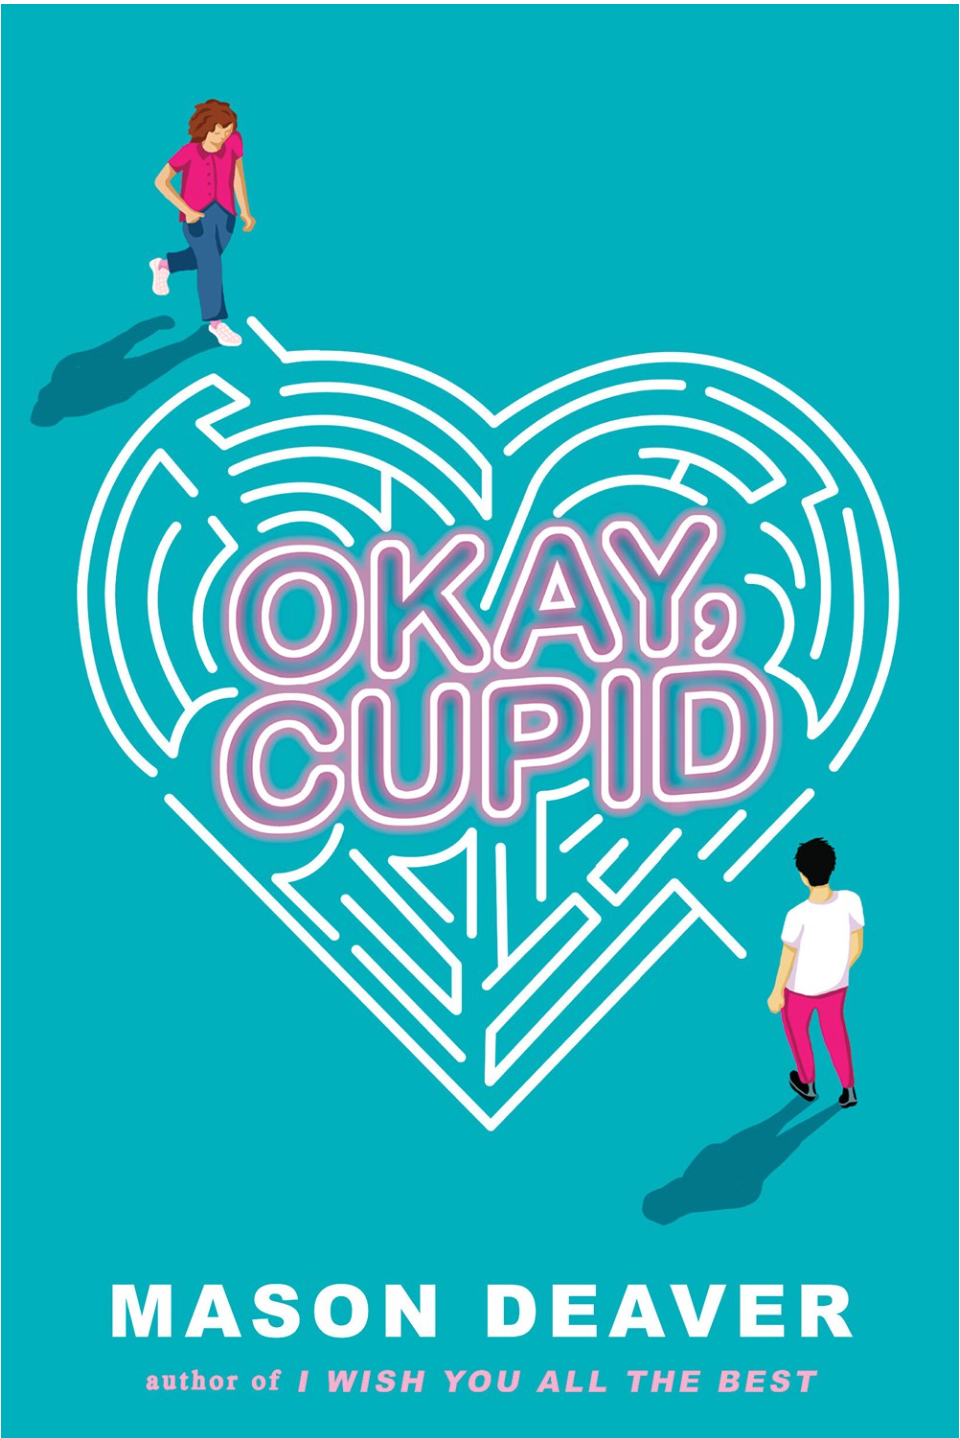 Okay, Cupid